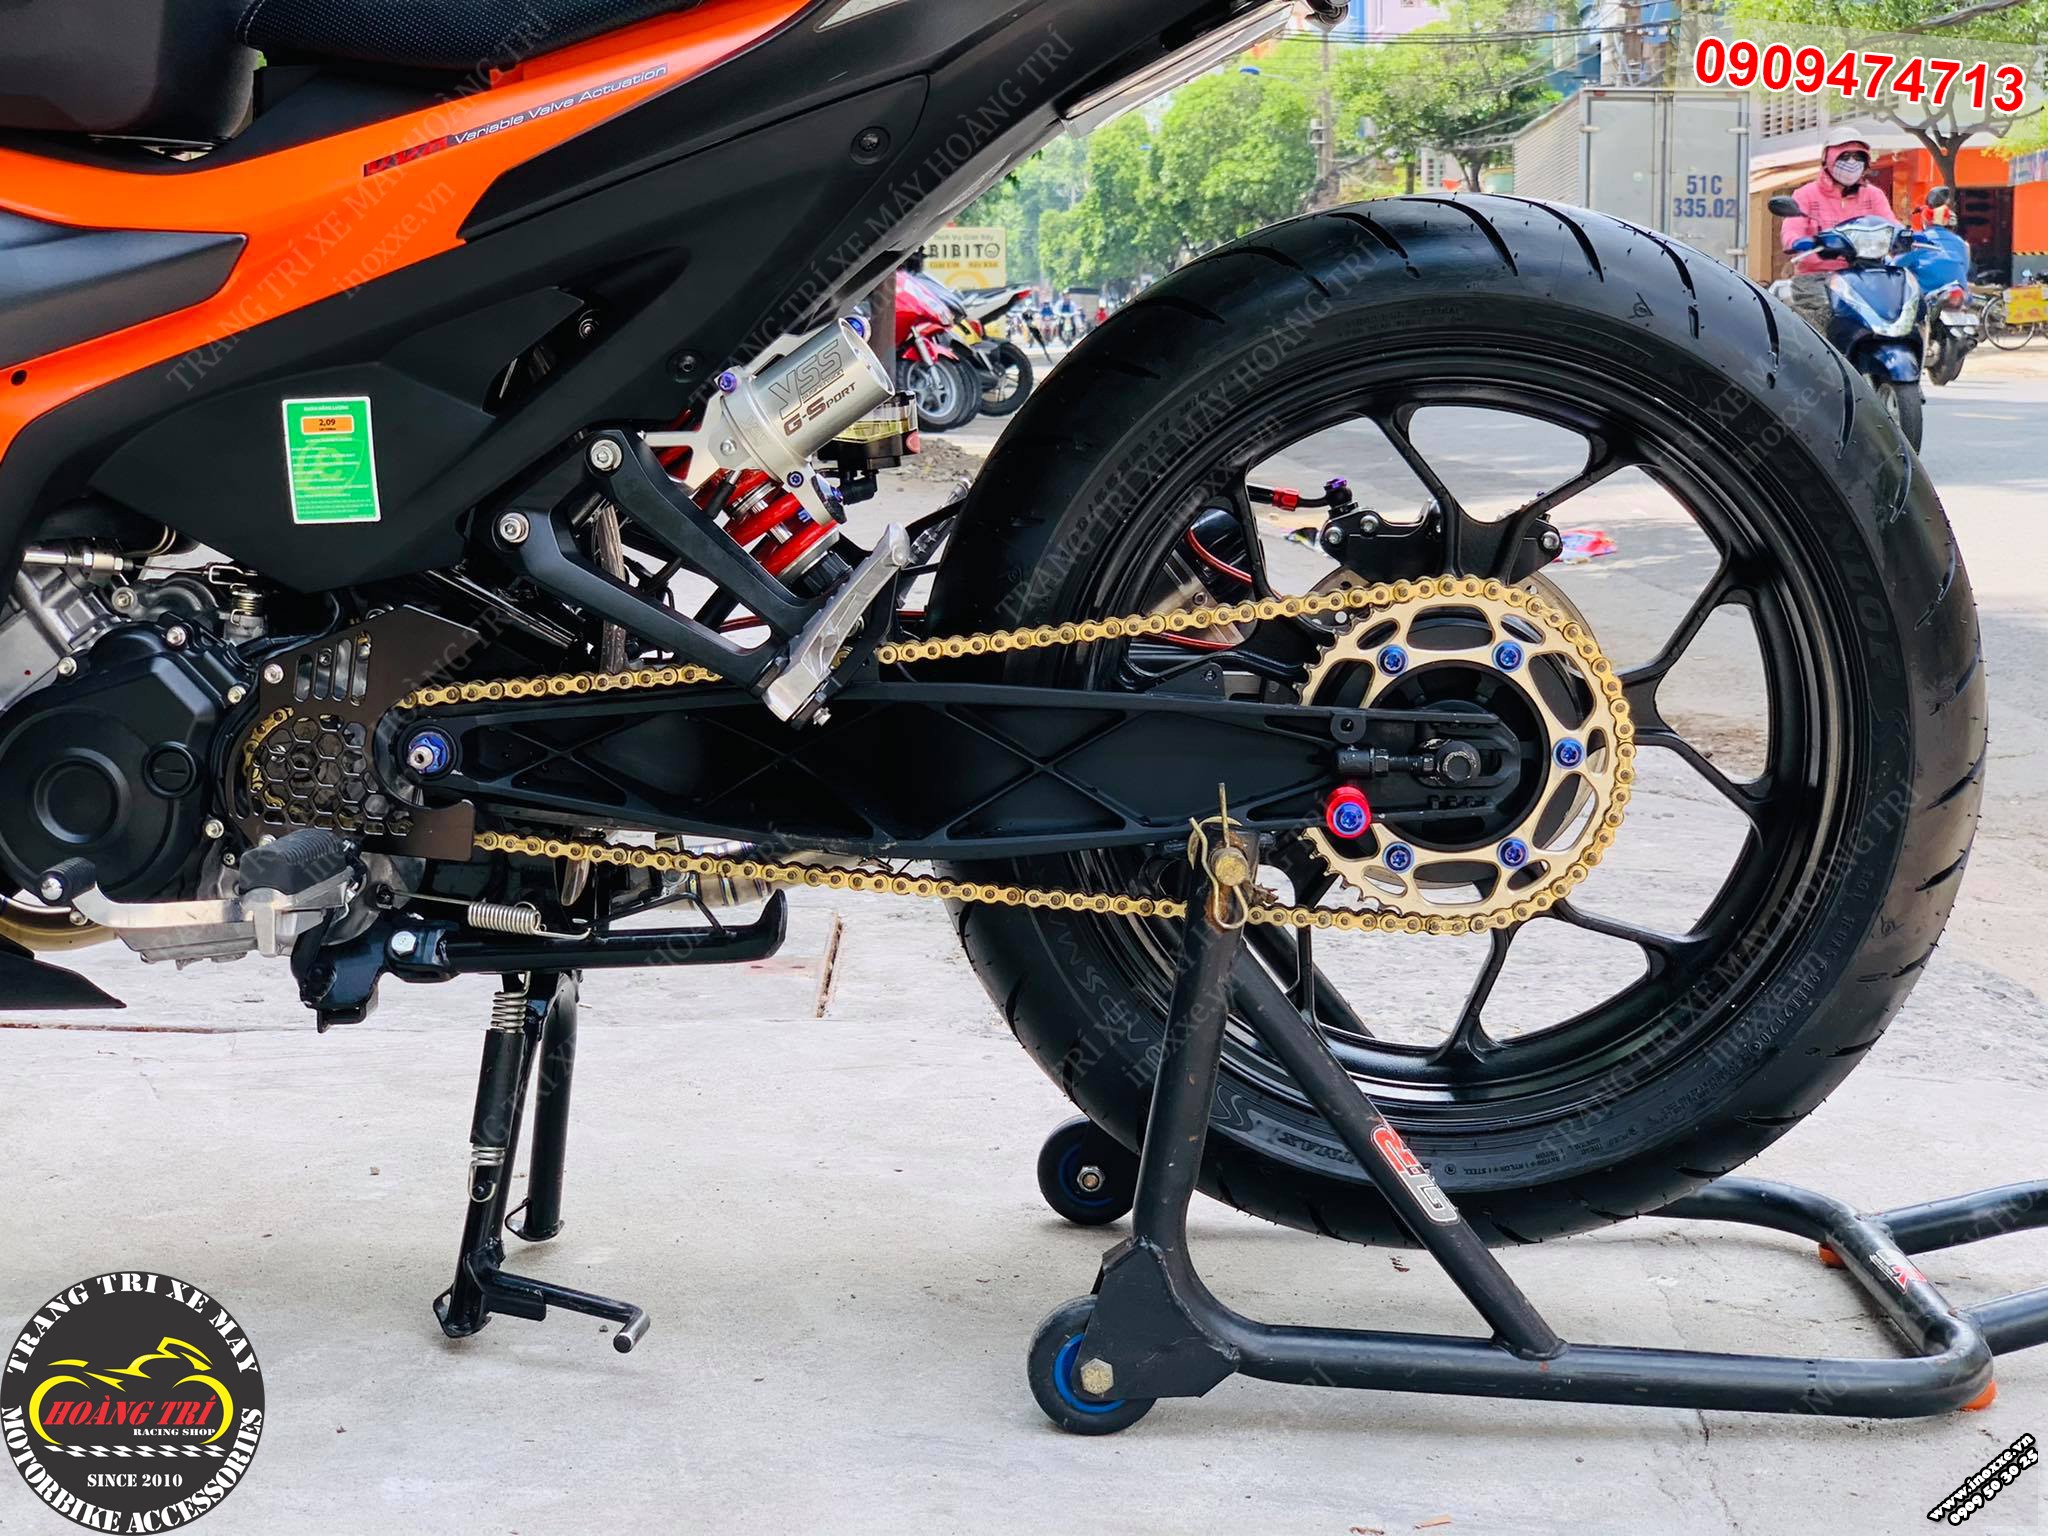 Độ dàn chân sau cho Exciter 155 phong cách Moto - Mâm R3 X1R 5.0, Gấp KTM, Vỏ 180/55-17